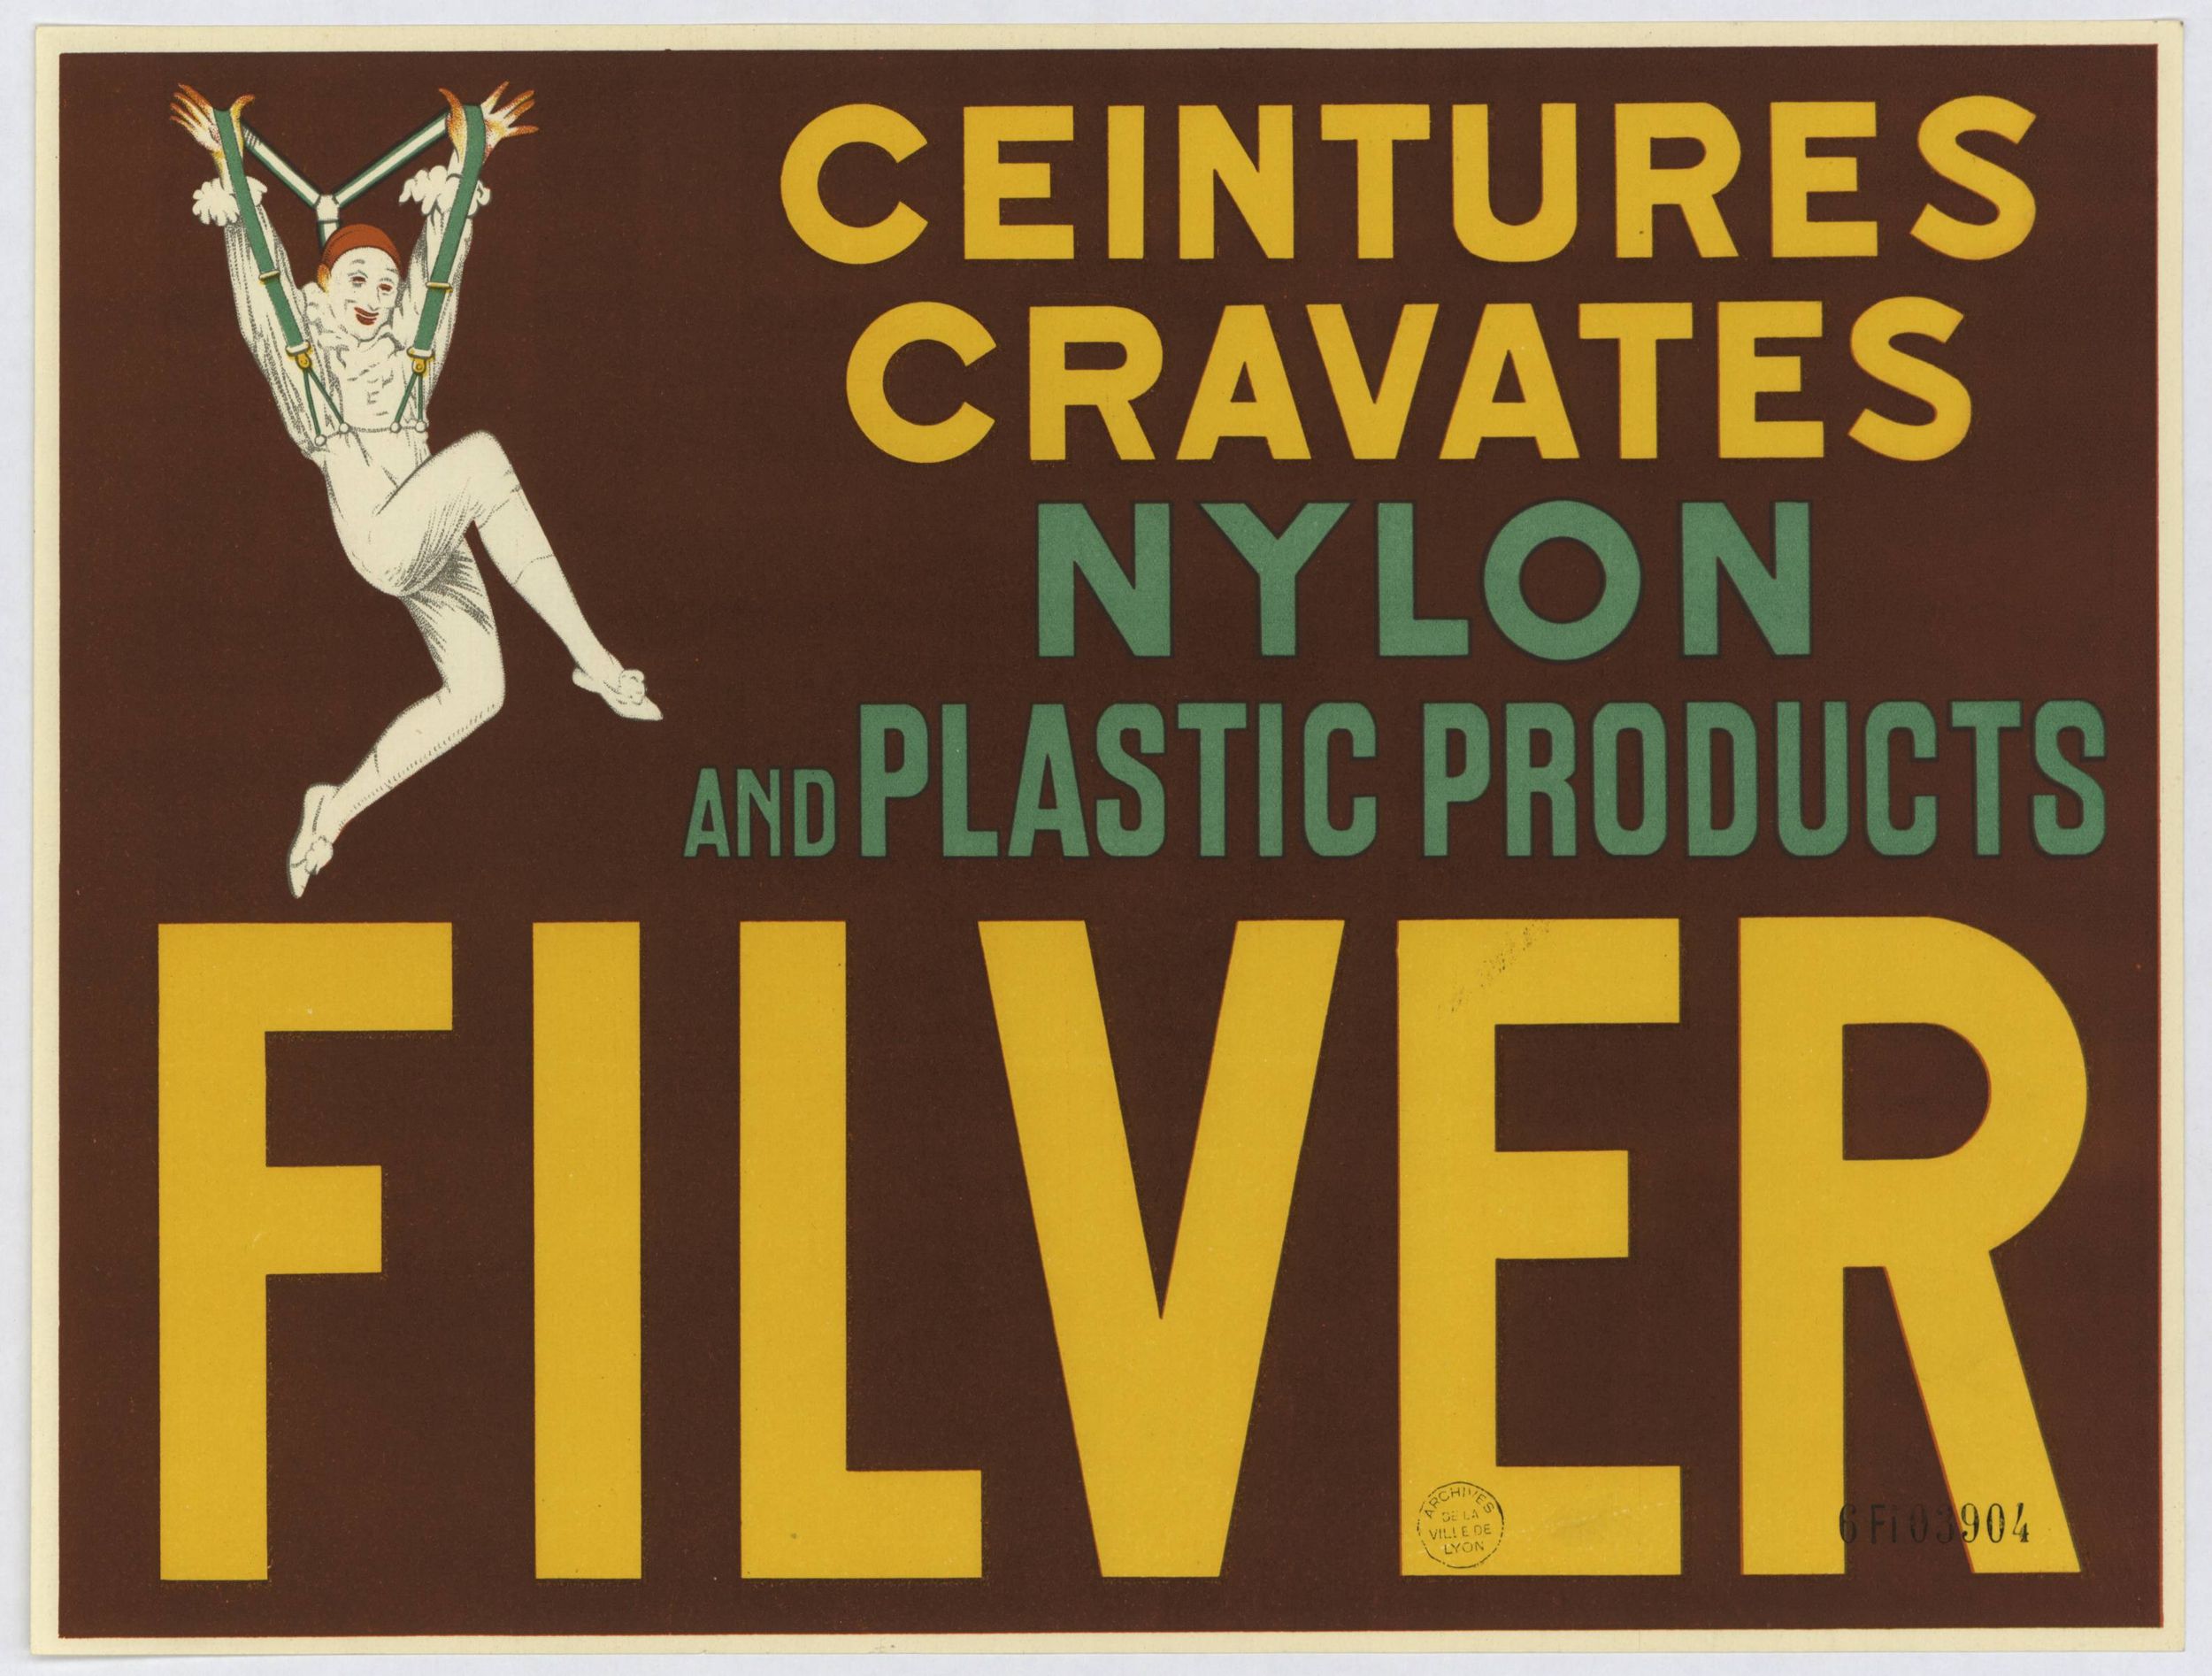 Ceintures, cravates nylon and plastics products Filver : affiche publicitaire couleur (1900, cote : 6FI/3904)